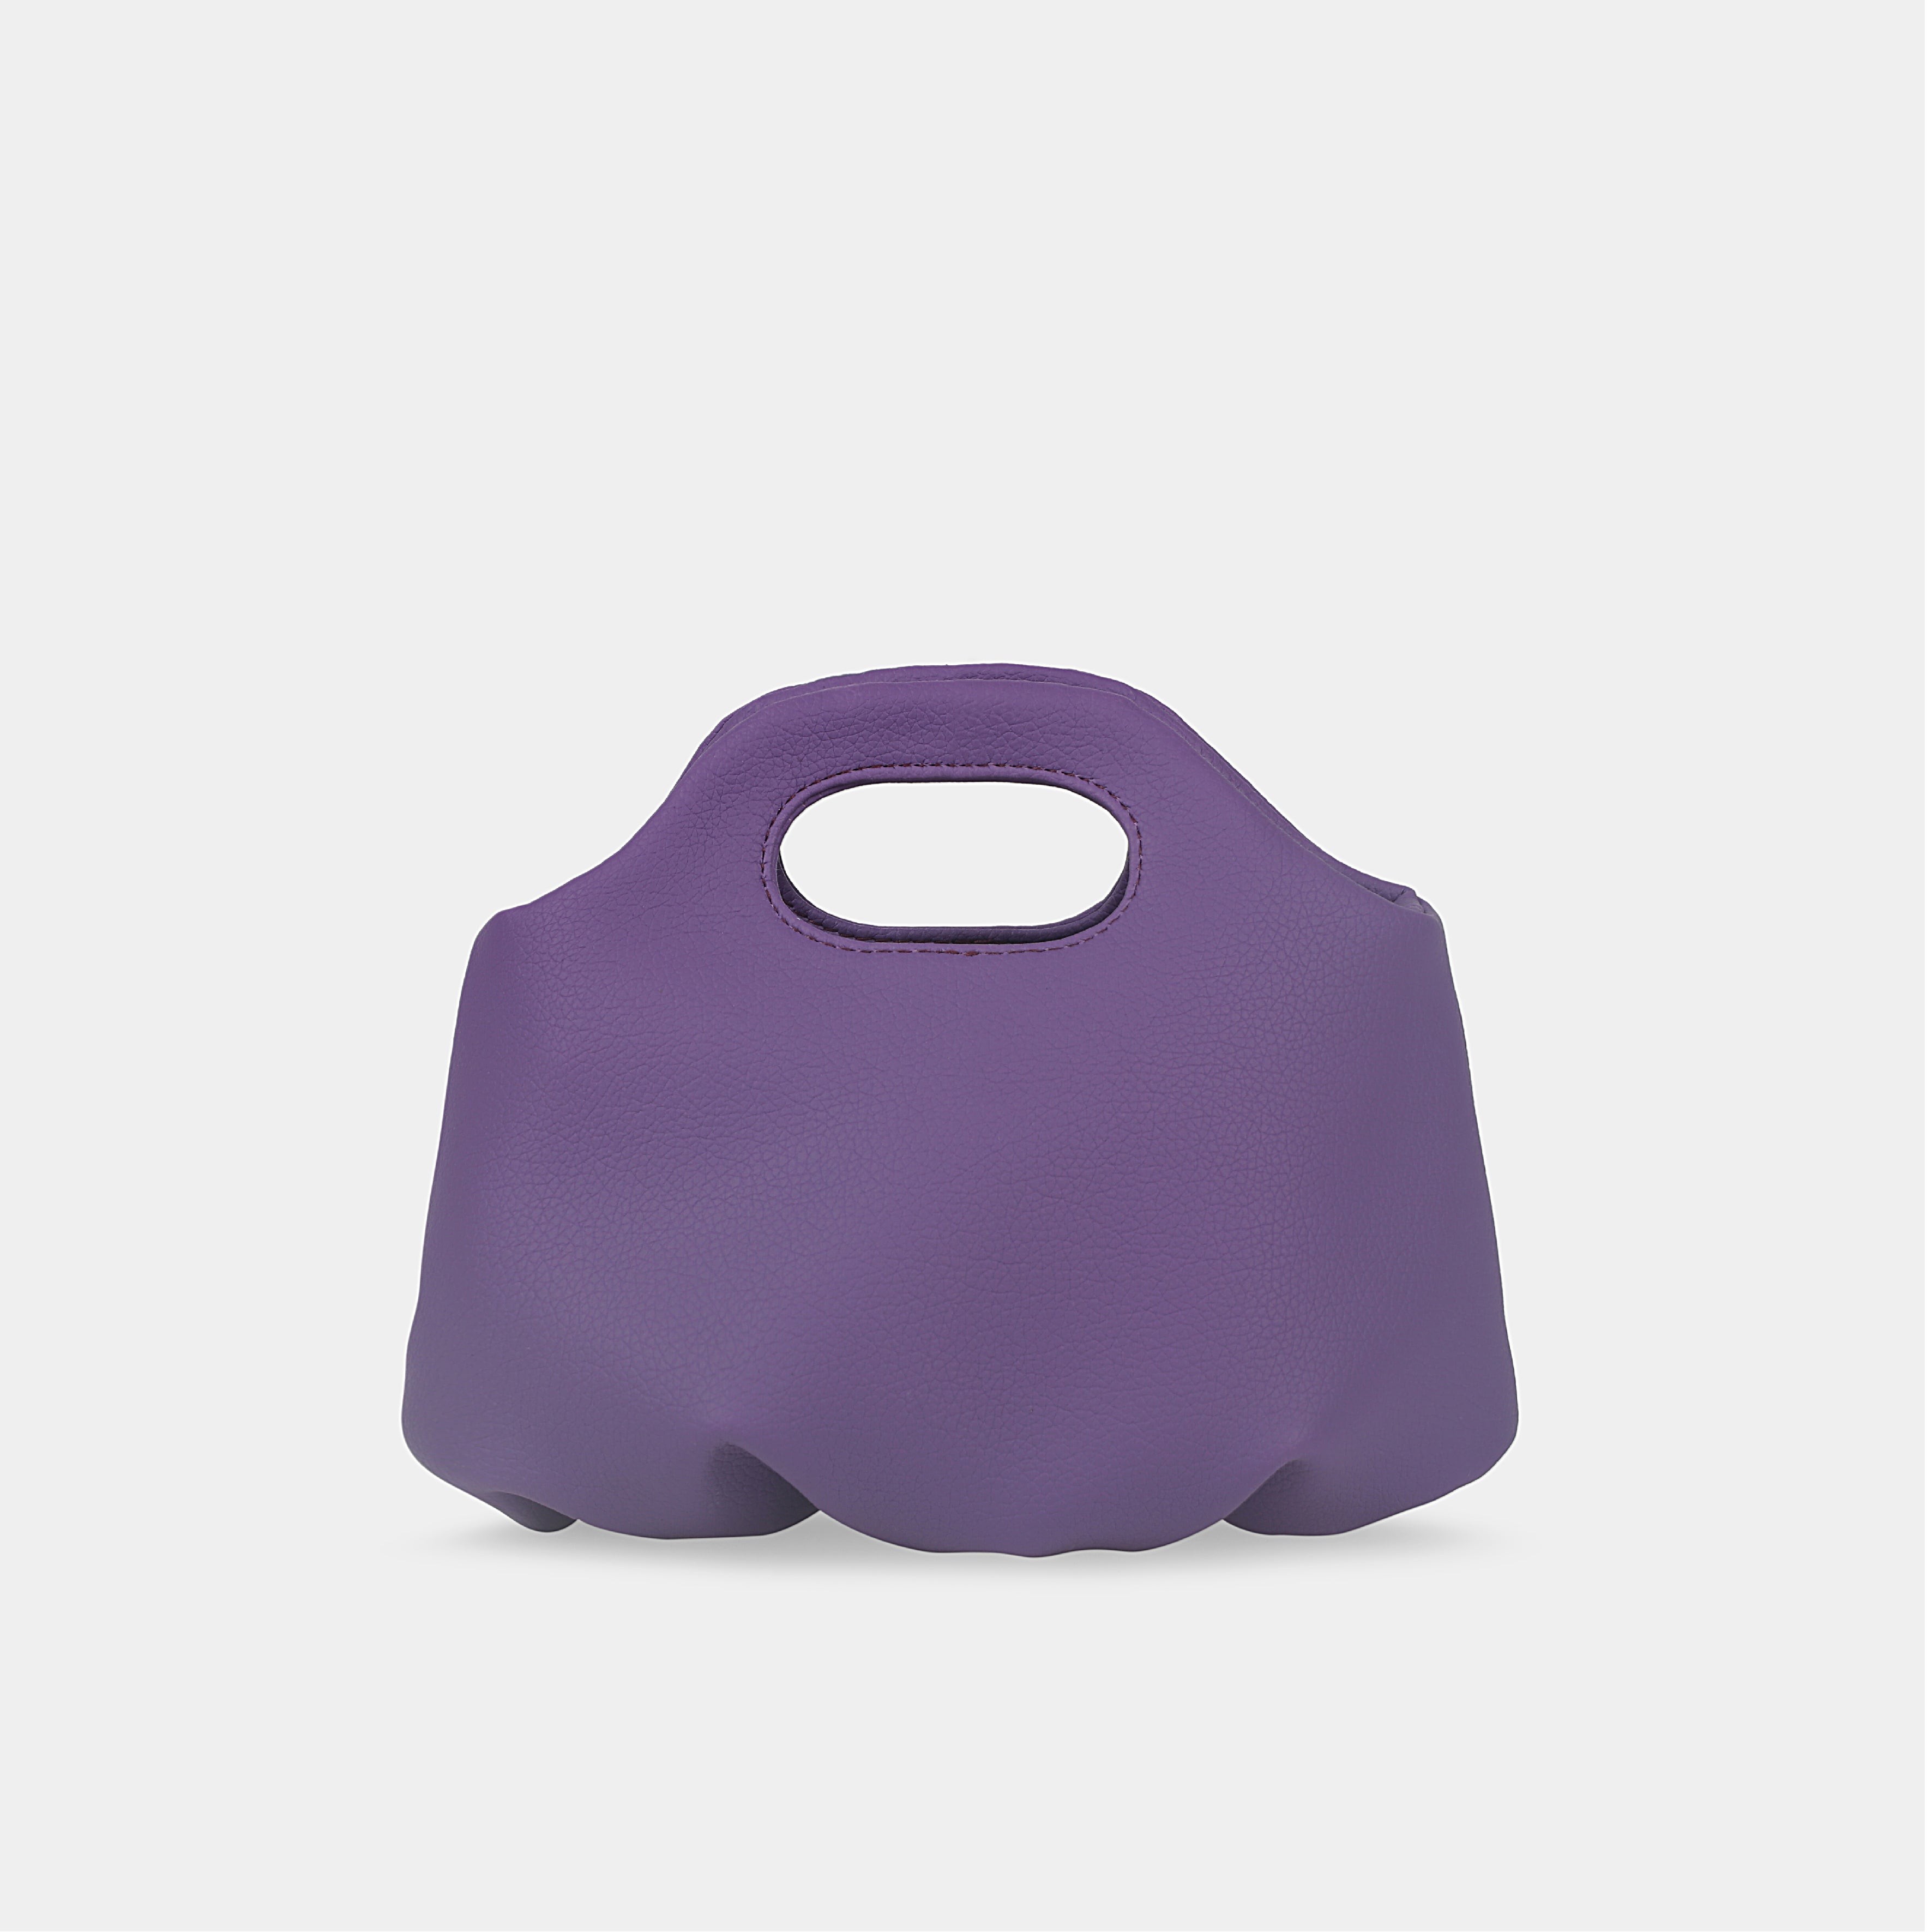 Purple Flower Mini Handbag